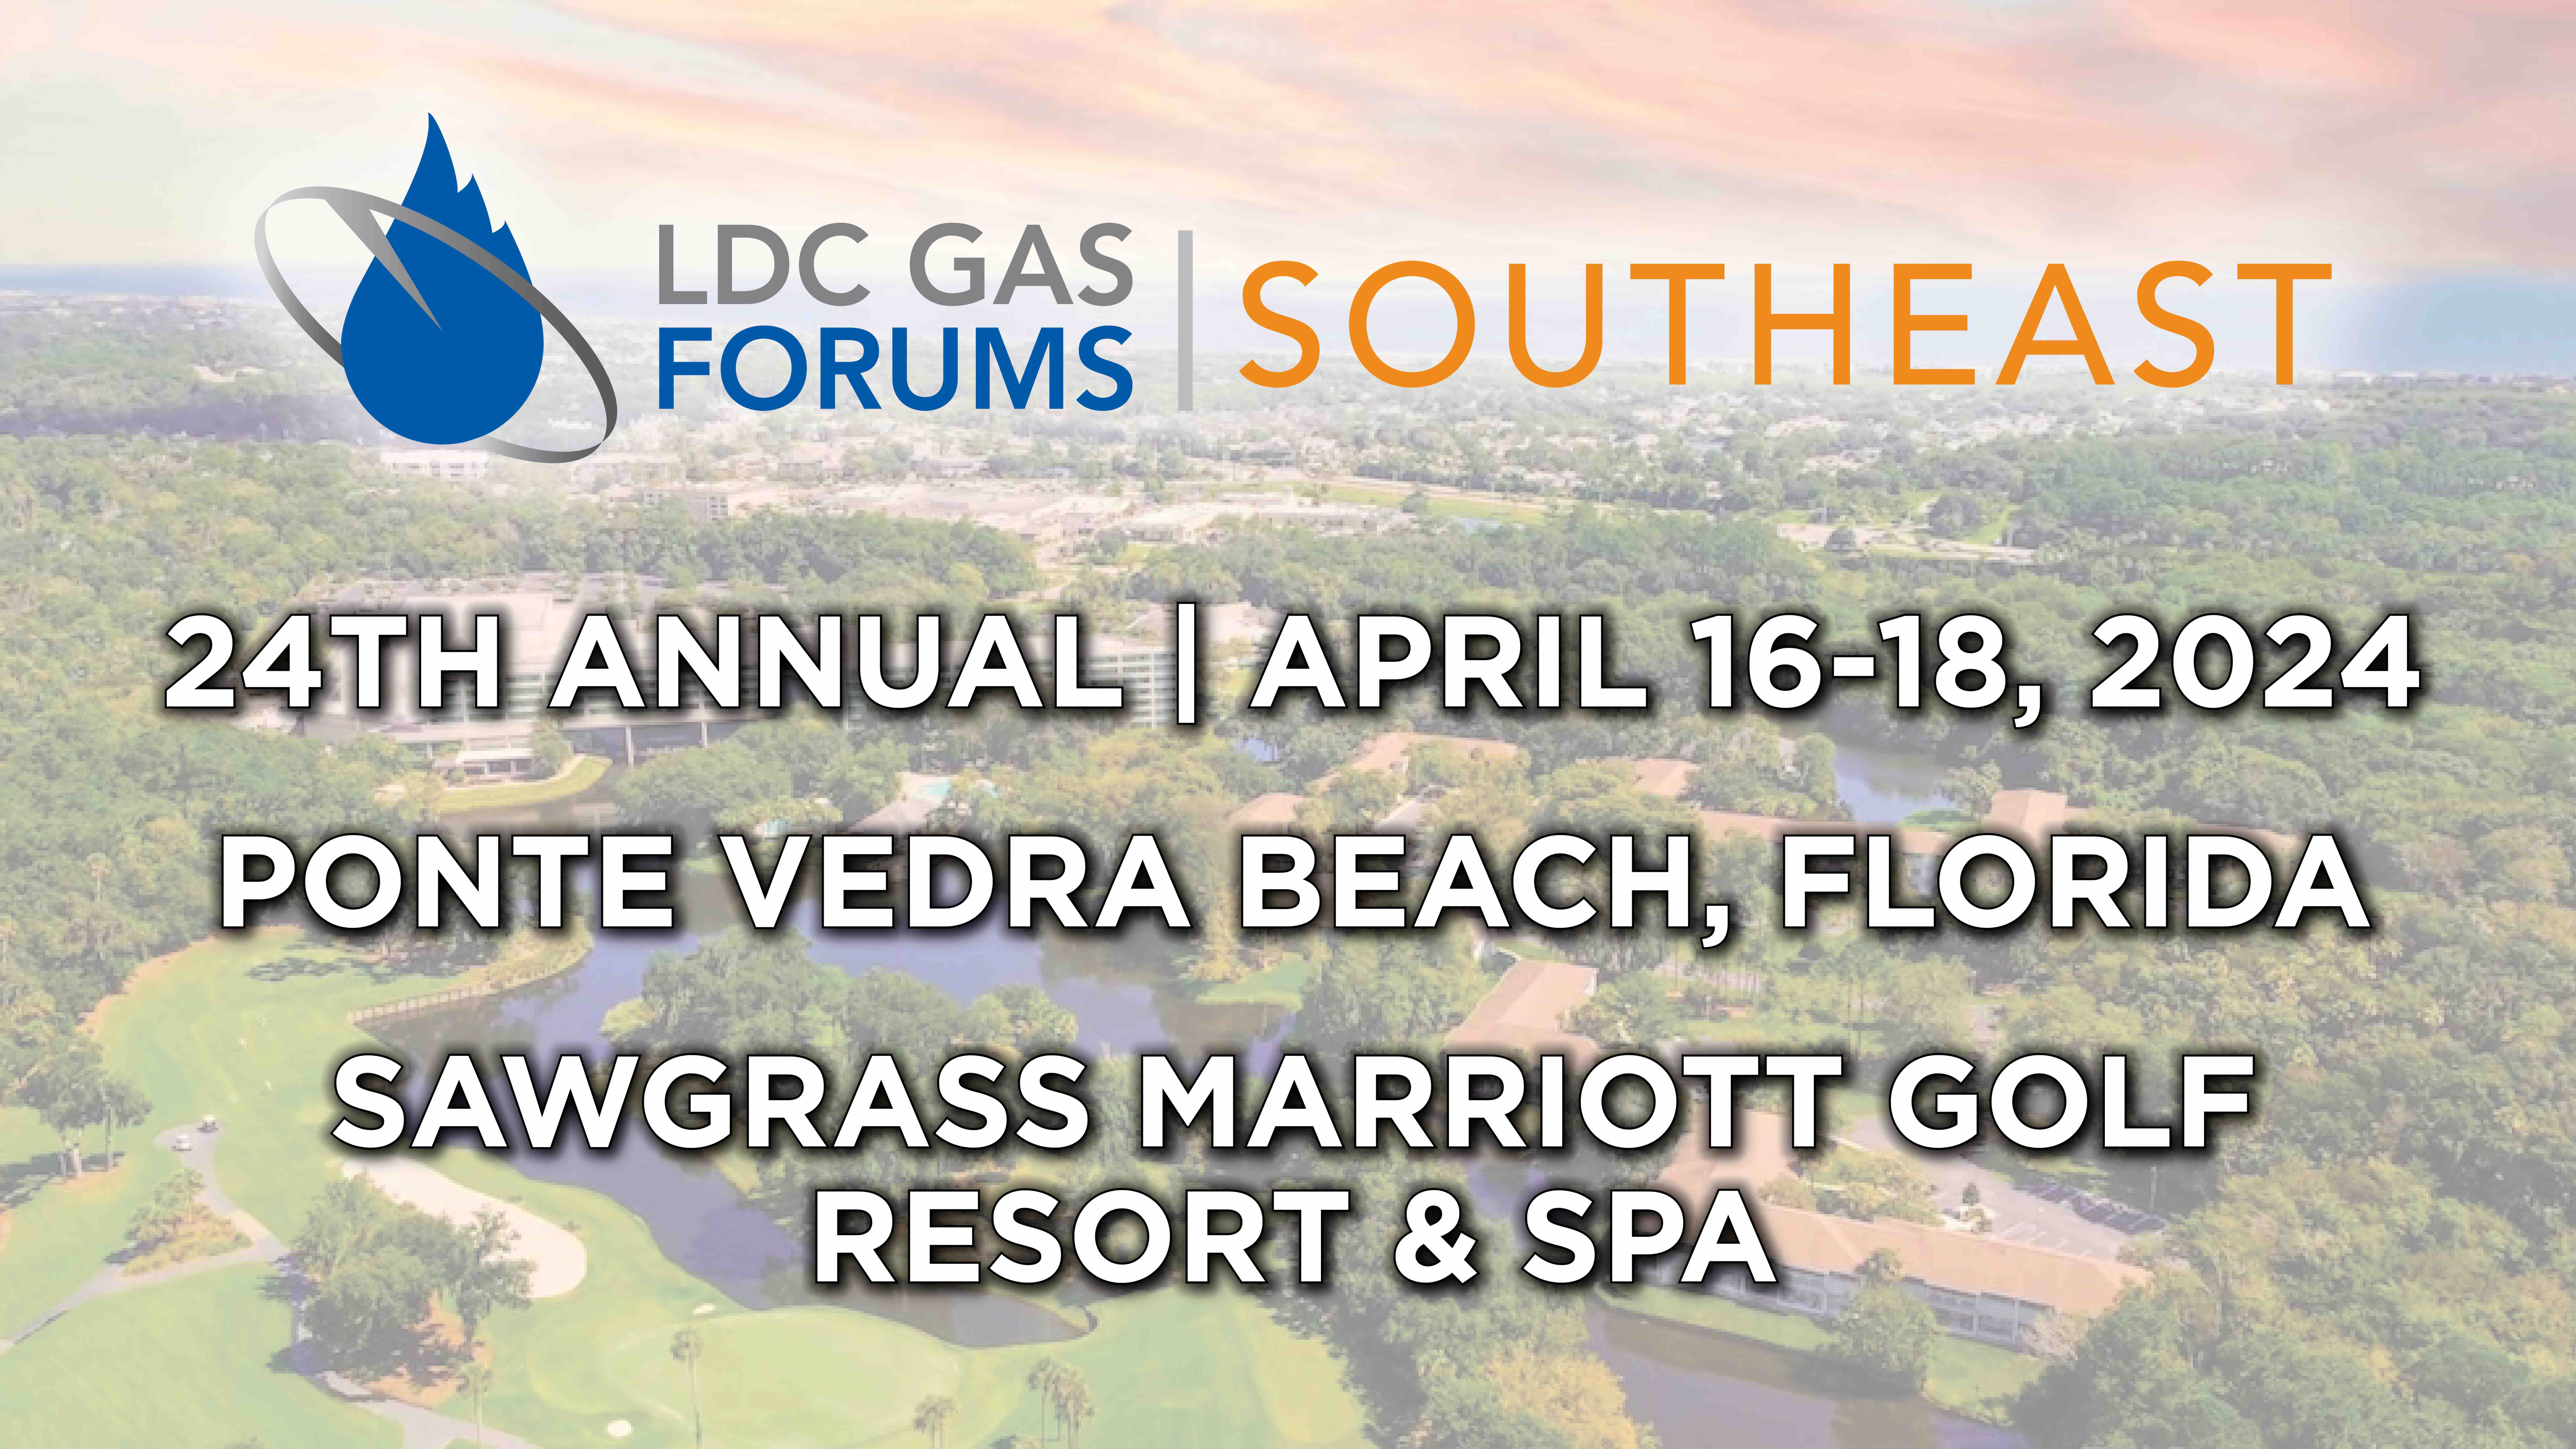 Register now for the LDC Gas Forum Southeast April 16 – April 18 Florida